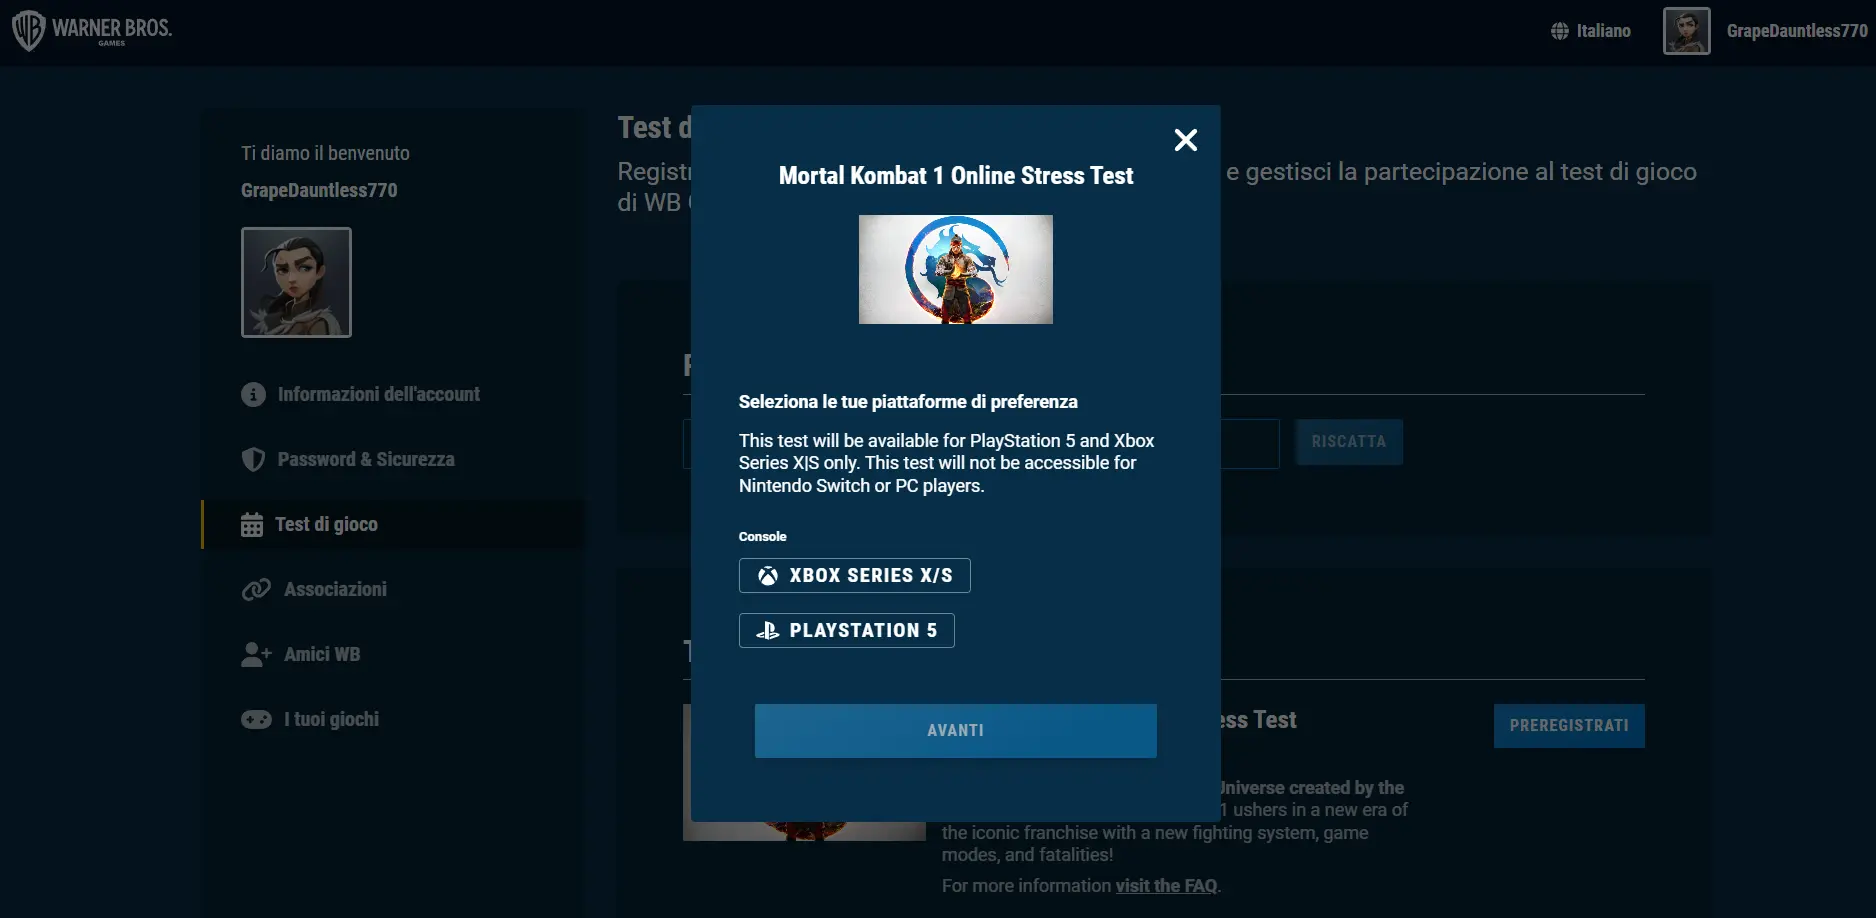 Mortal Kombat 1 Online Stress Test: al via il 23 giugno